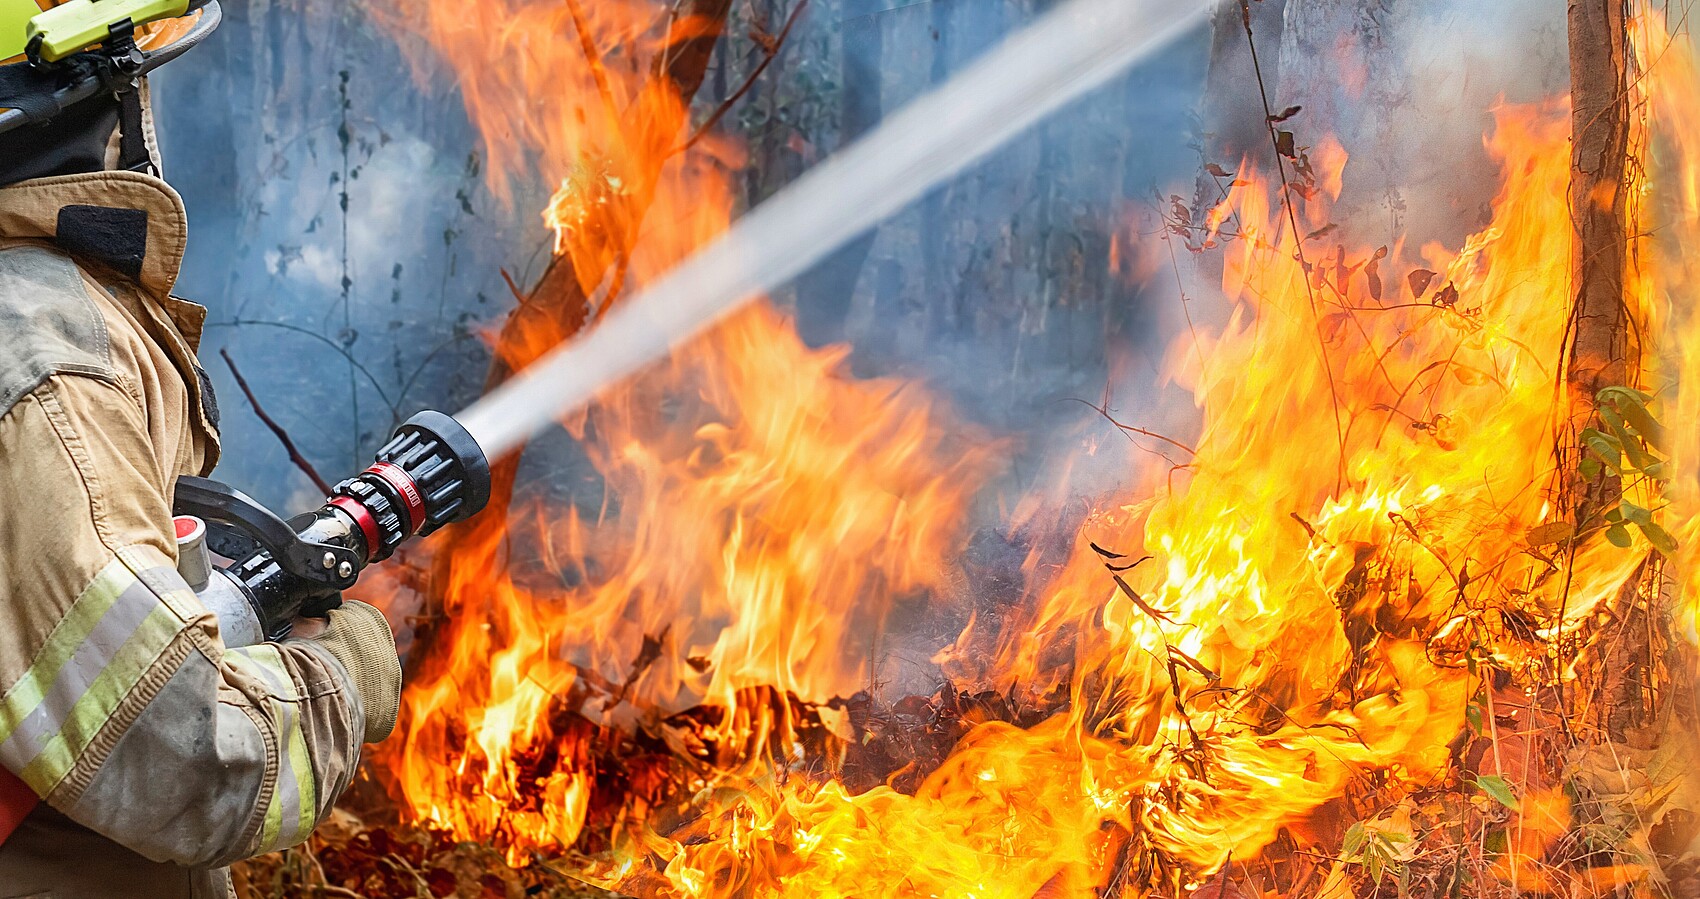 Feuerwehrmann hält Wasserstrahl auf lichterloh brennende Bäume